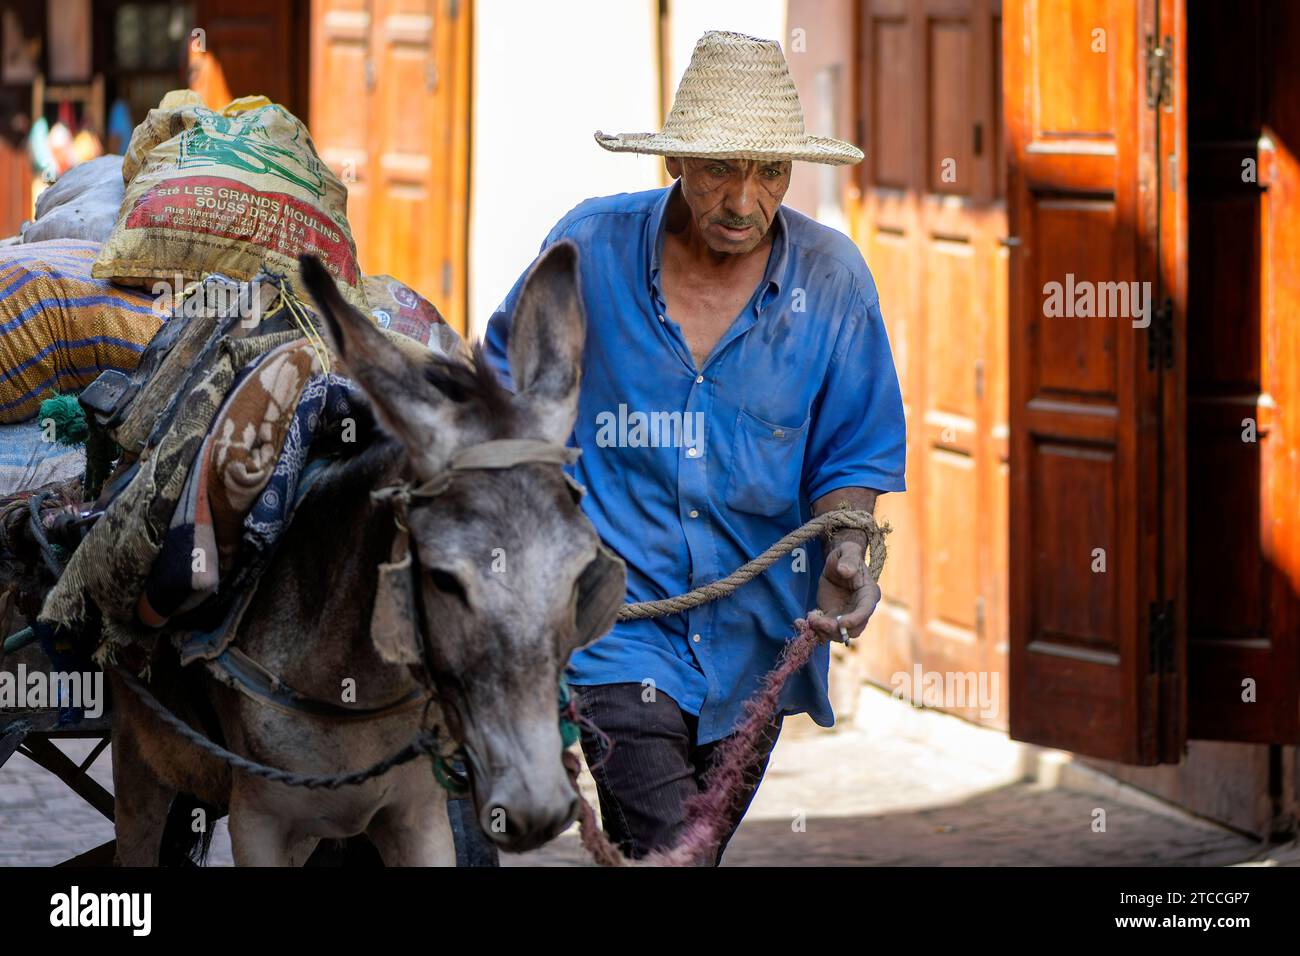 Marrakech, Maroc : Homme marocain menant un âne dans une rue à l'intérieur de la médina de Marrakech. Banque D'Images